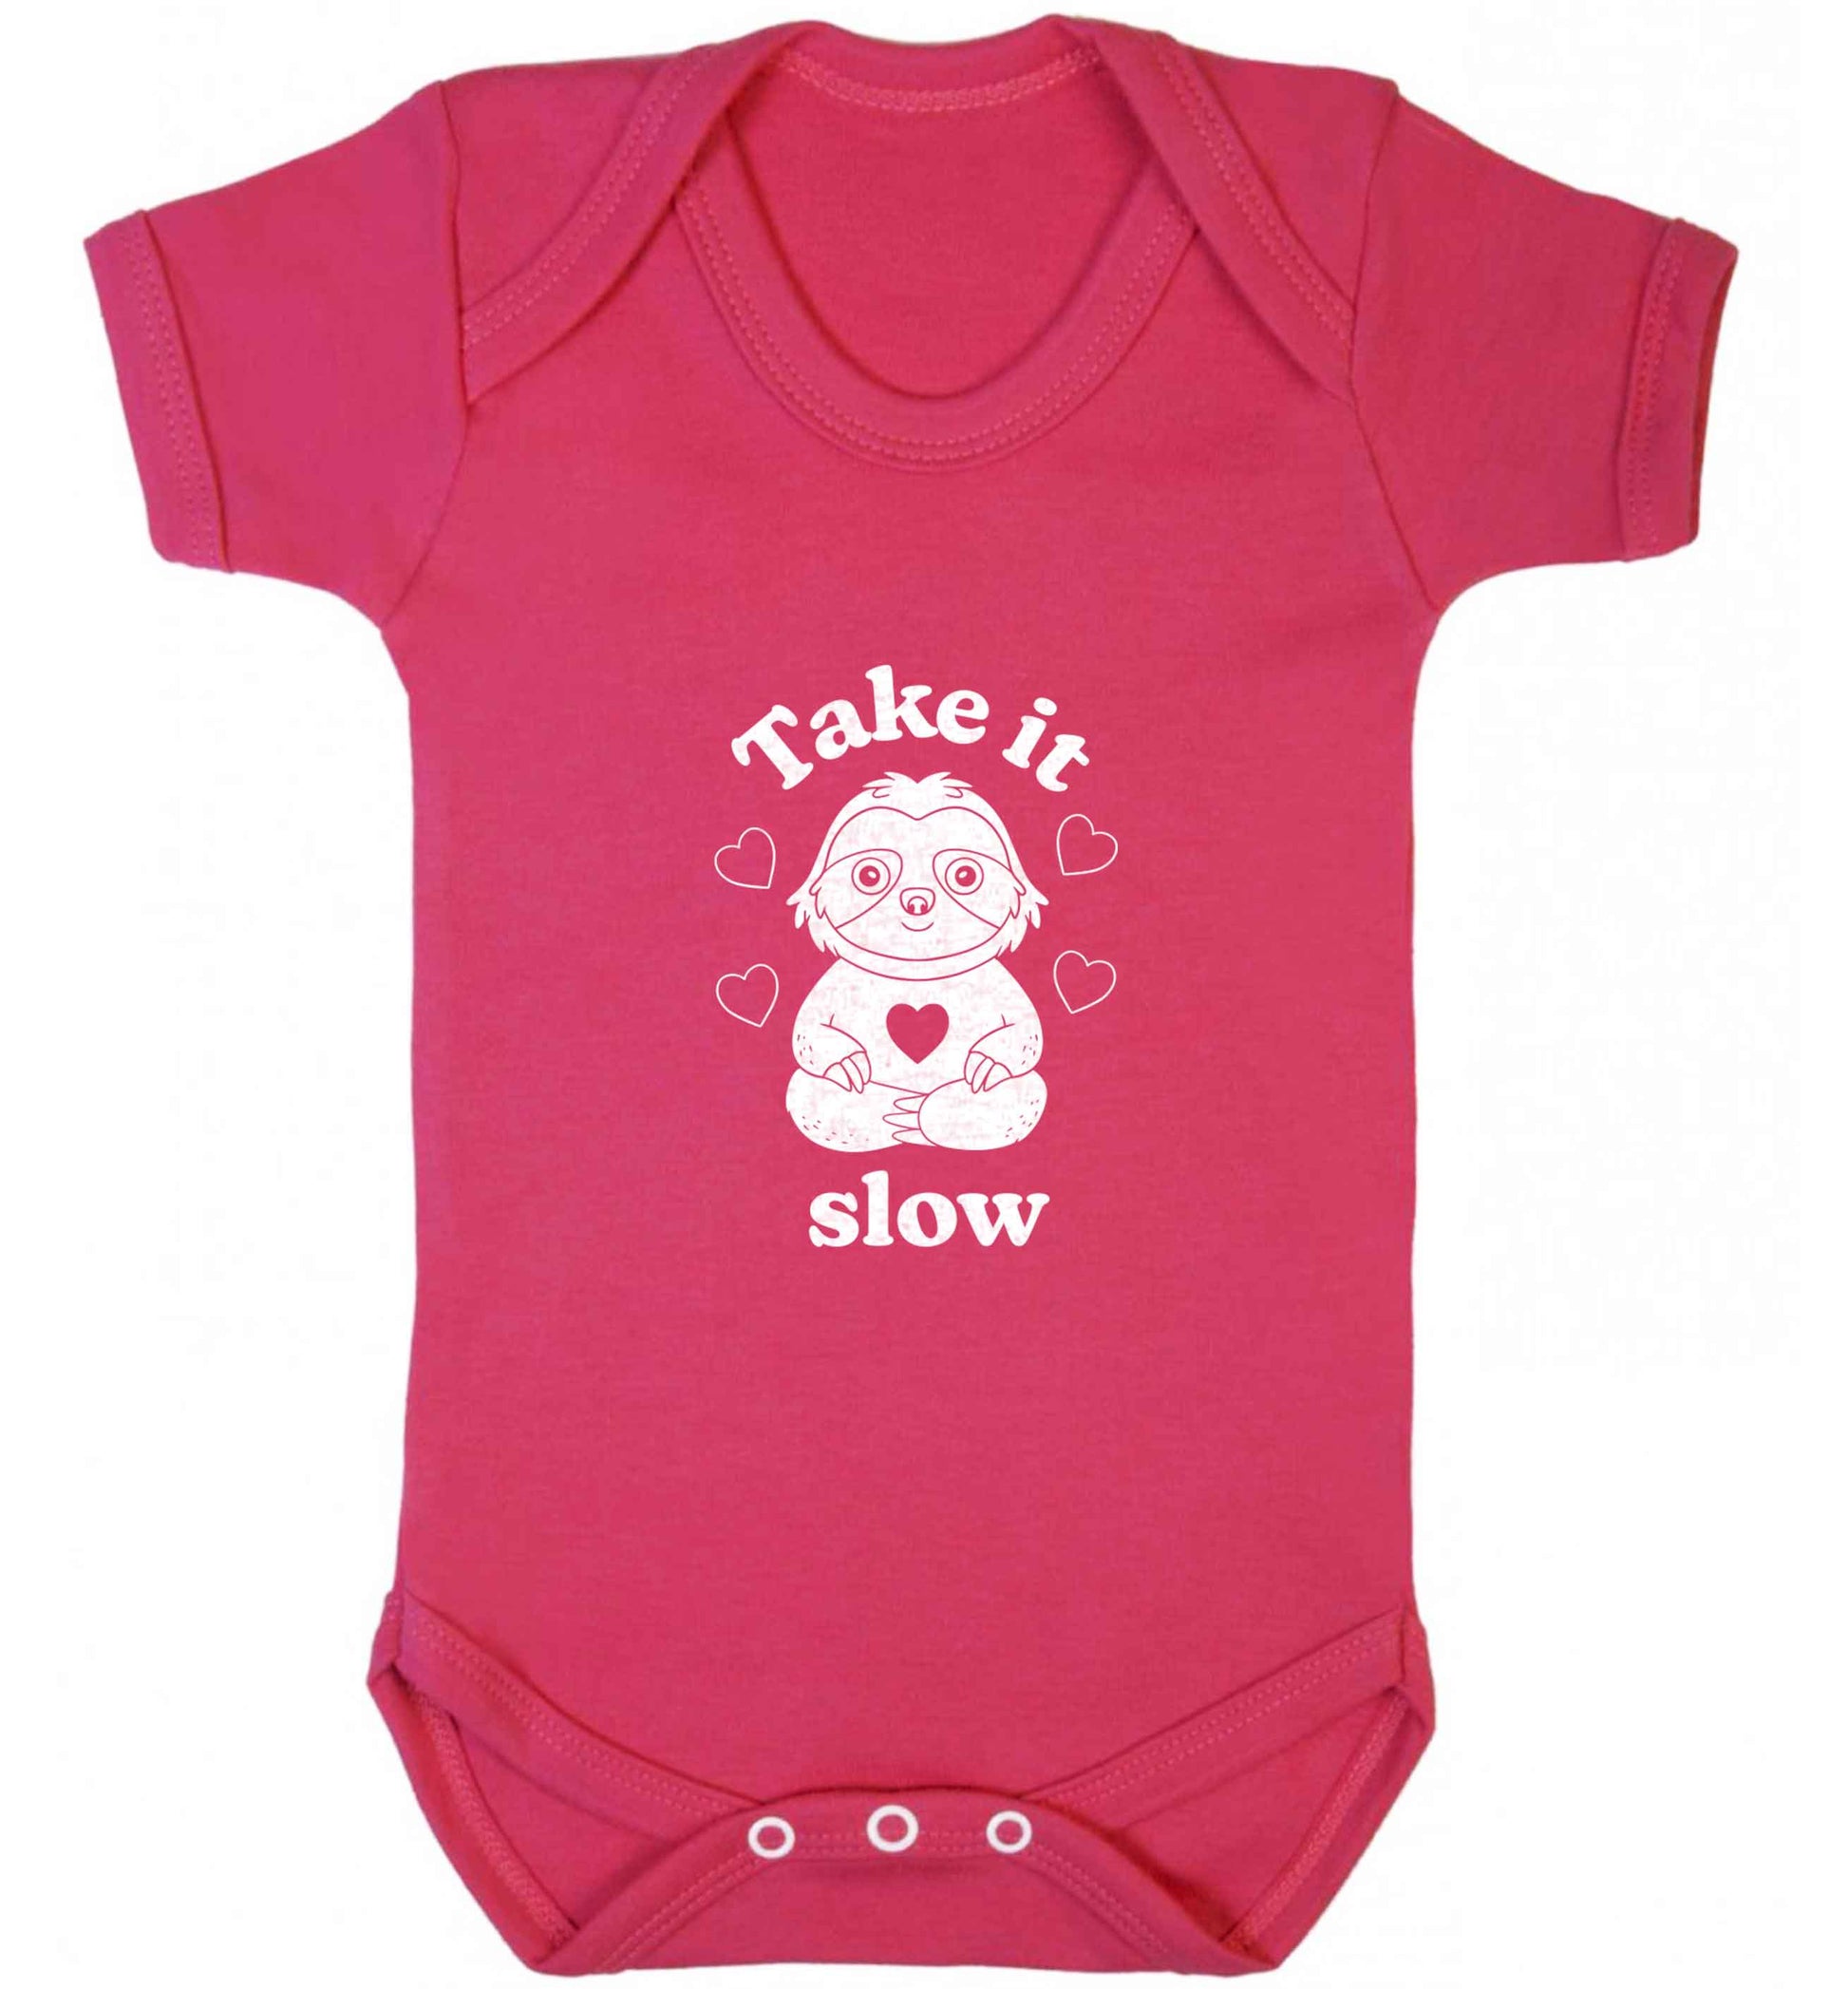 Take it slow baby vest dark pink 18-24 months